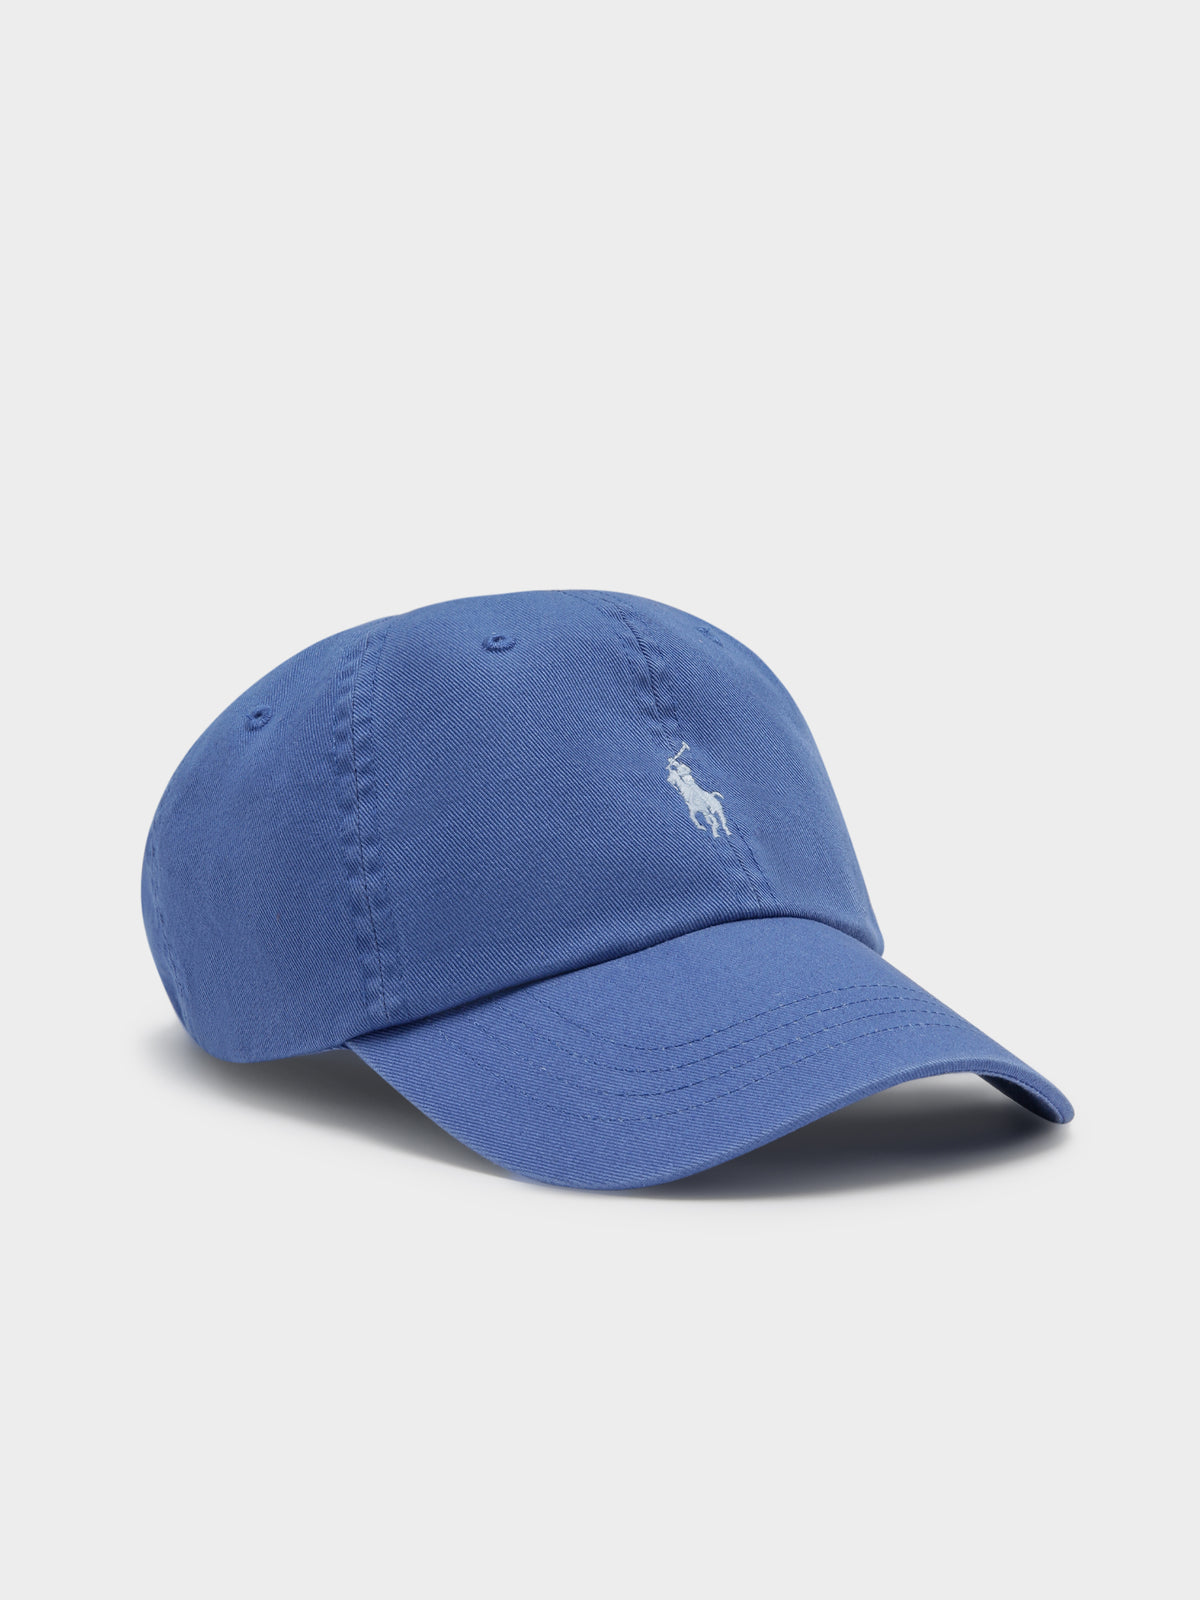 Classic Sport Cap in Light Blue